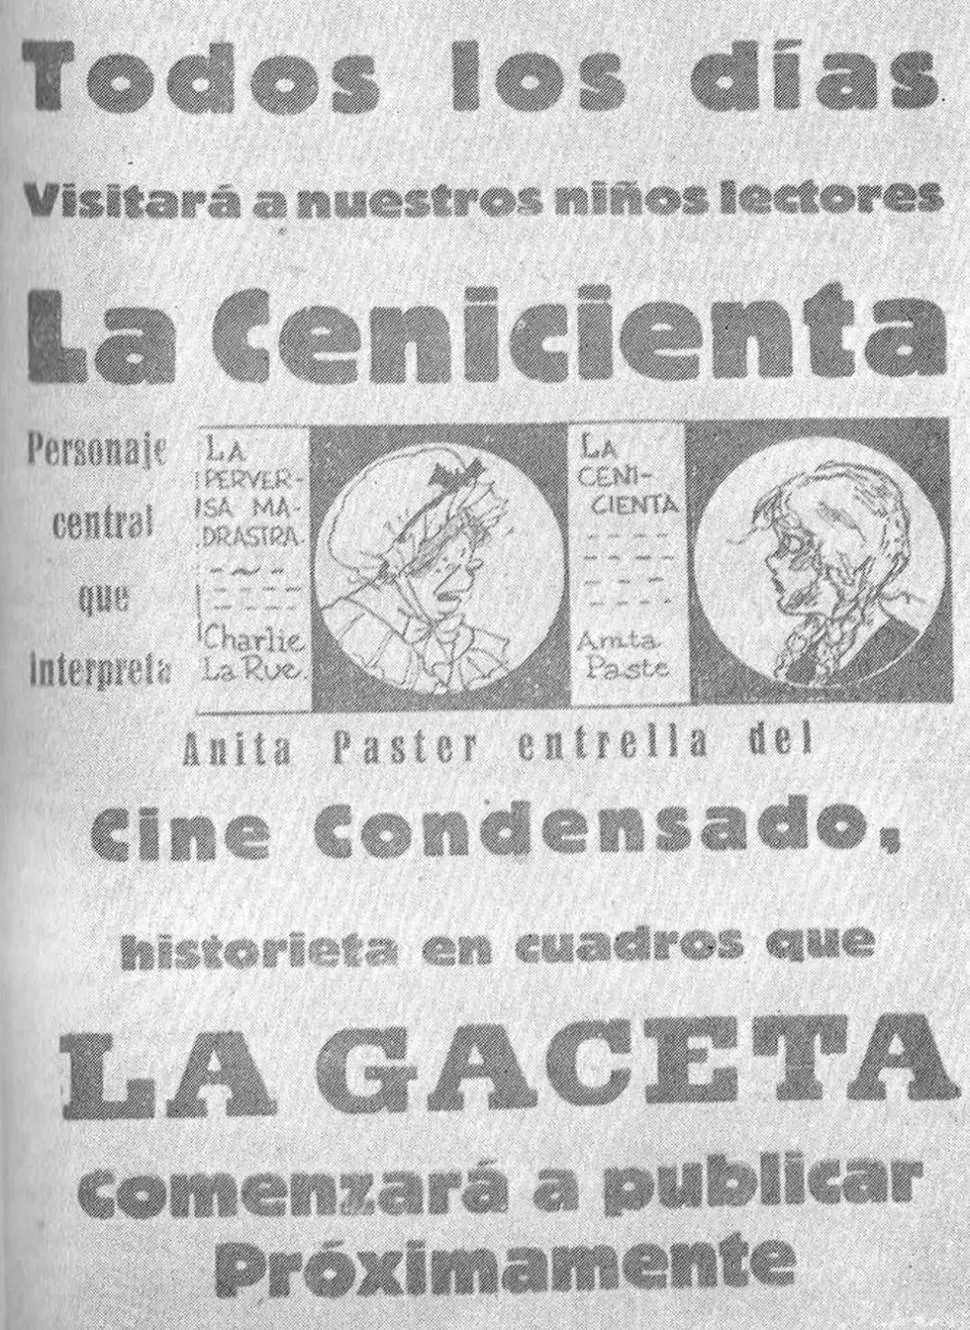 HACE OCHO DÉCADAS. El 1 de marzo de 1931, LA GACETA anuncia el inicio, por entregas, de la historieta cinematográfica de La Cenicienta.